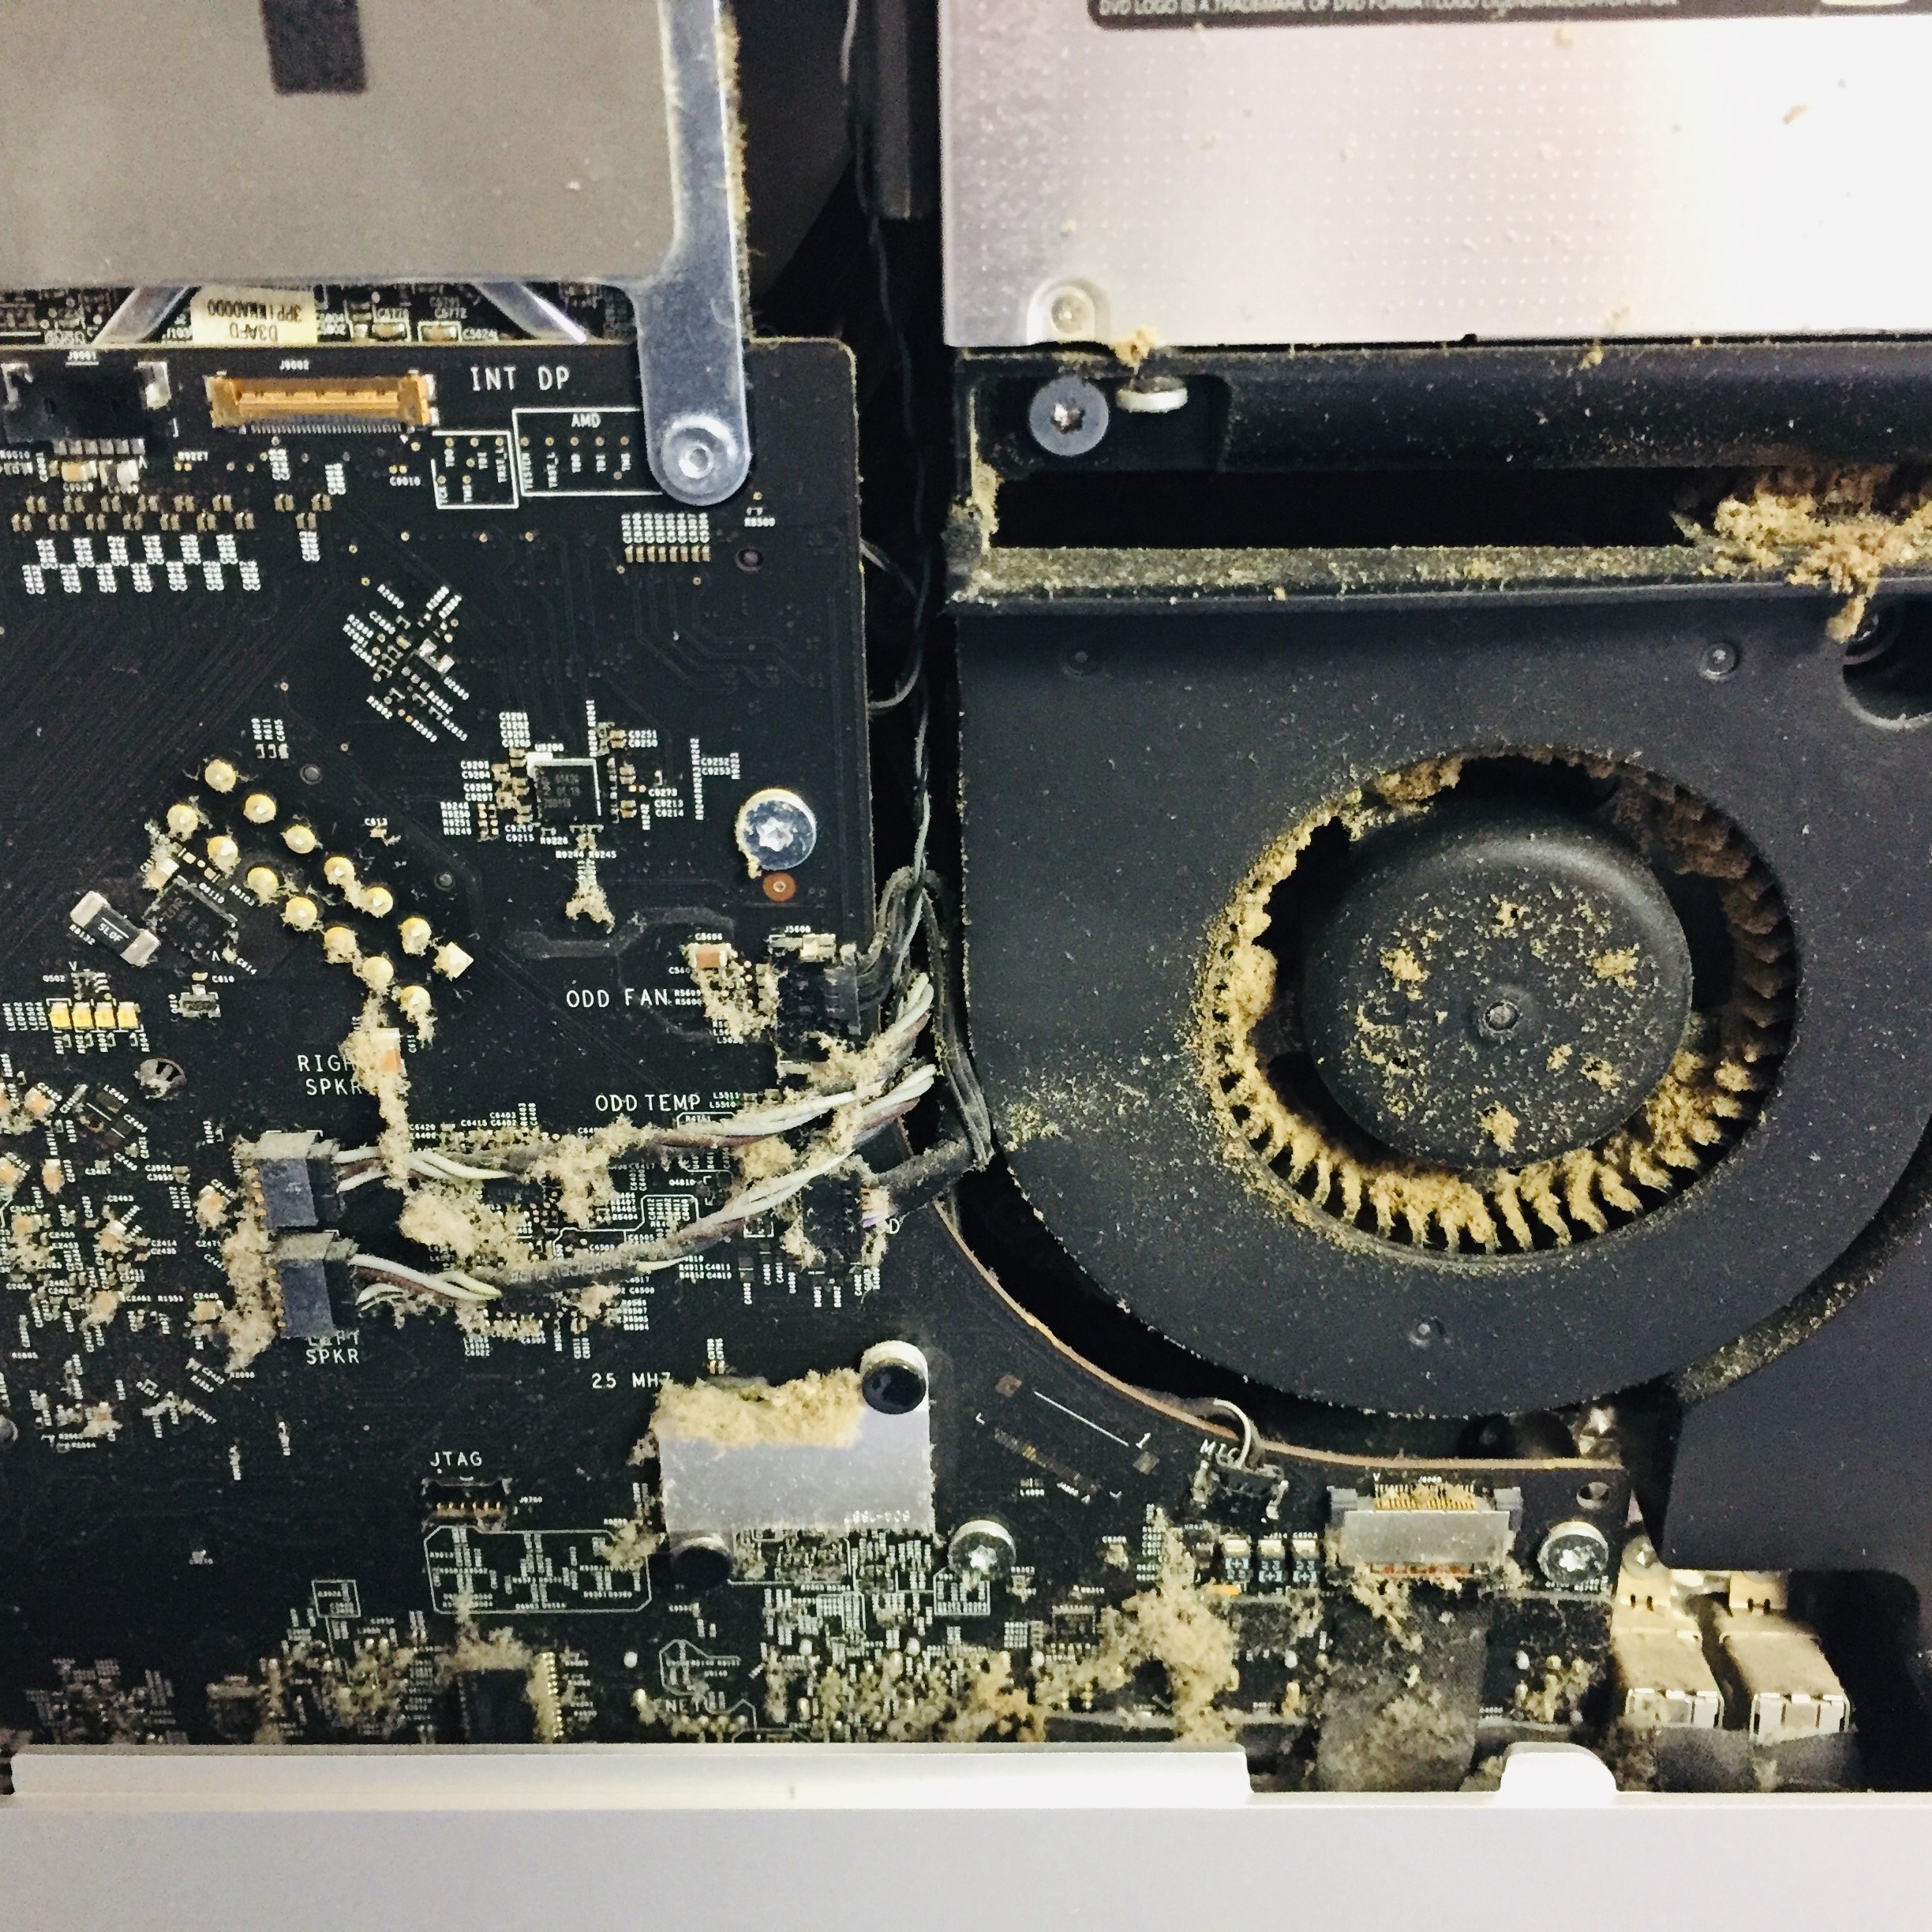 Imacのグラフィクボード不良により起動できない 画面がブラックアウト状態 低価格 000円 Applemac神戸店 Macboook Iphone 買取と修理